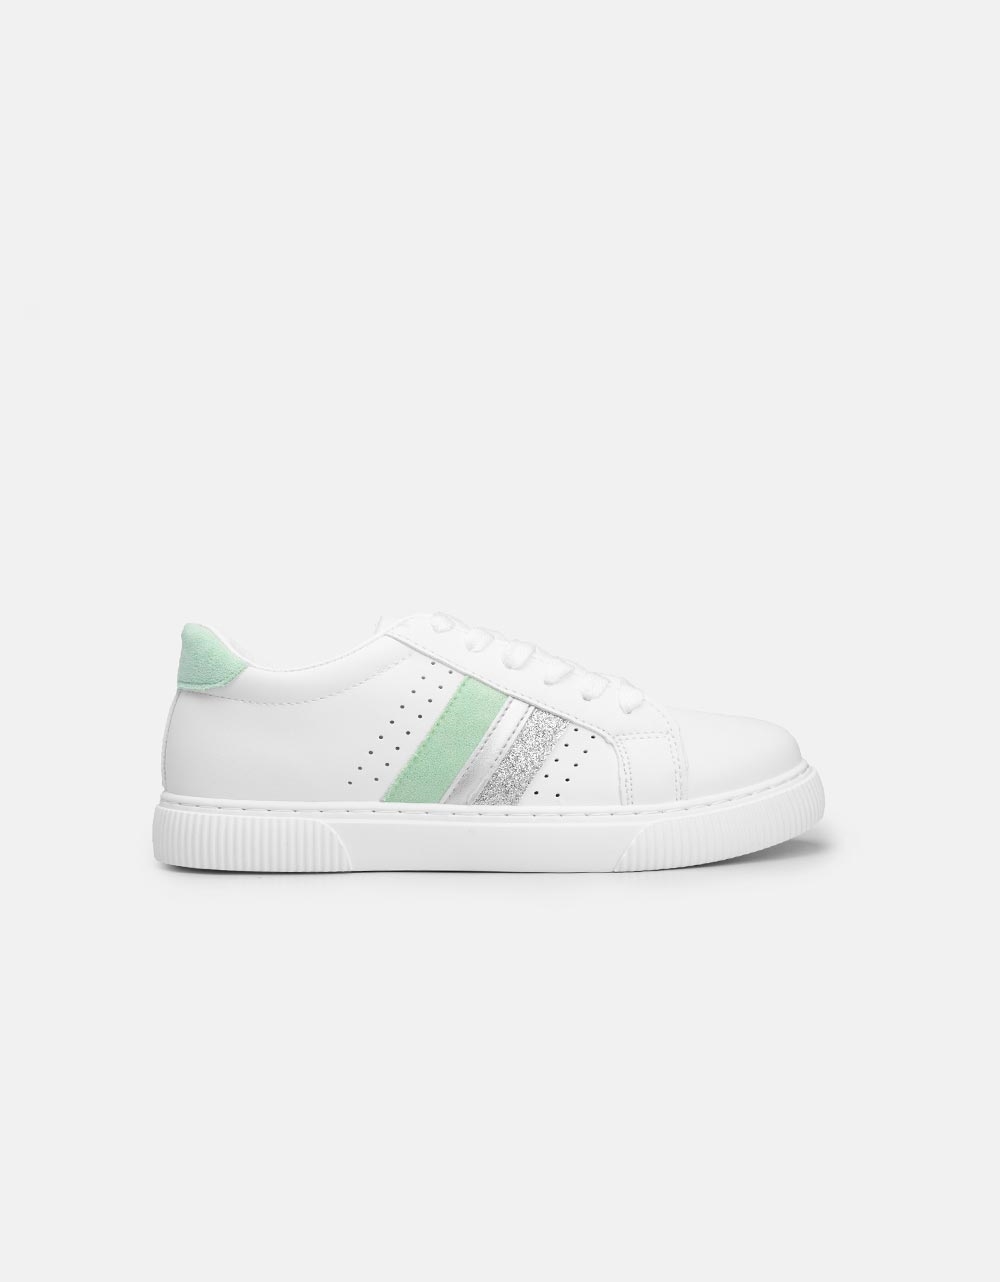 Εικόνα από Γυναικεία sneakers basic με ρίγες στο πλαινό μέρος Λευκό/Πράσινο